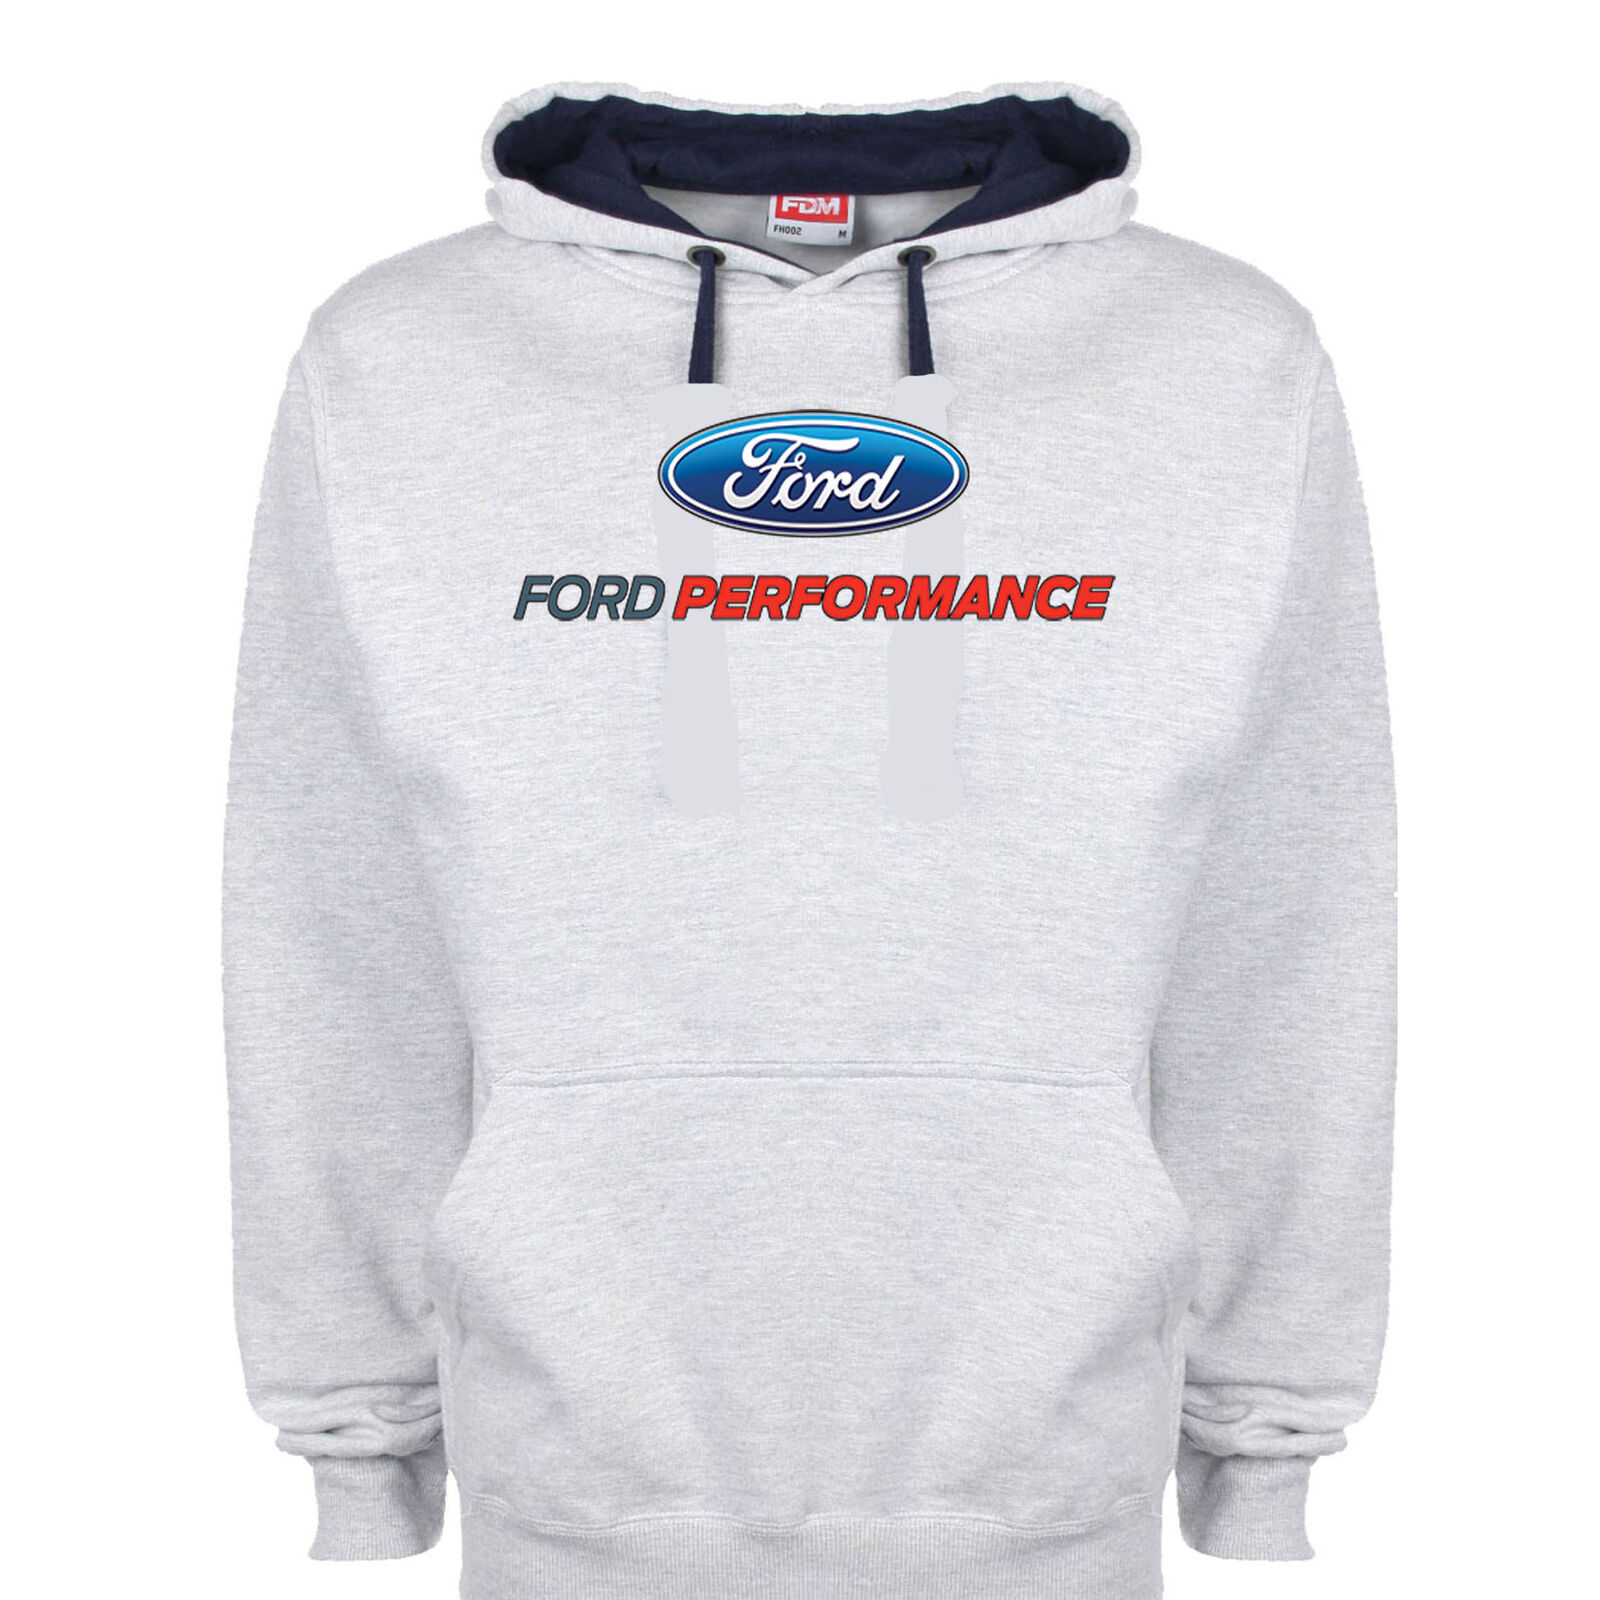 Licenced Ford Performance Hoody Hoodie Racing Motorsport Race Car Sweatshirt 